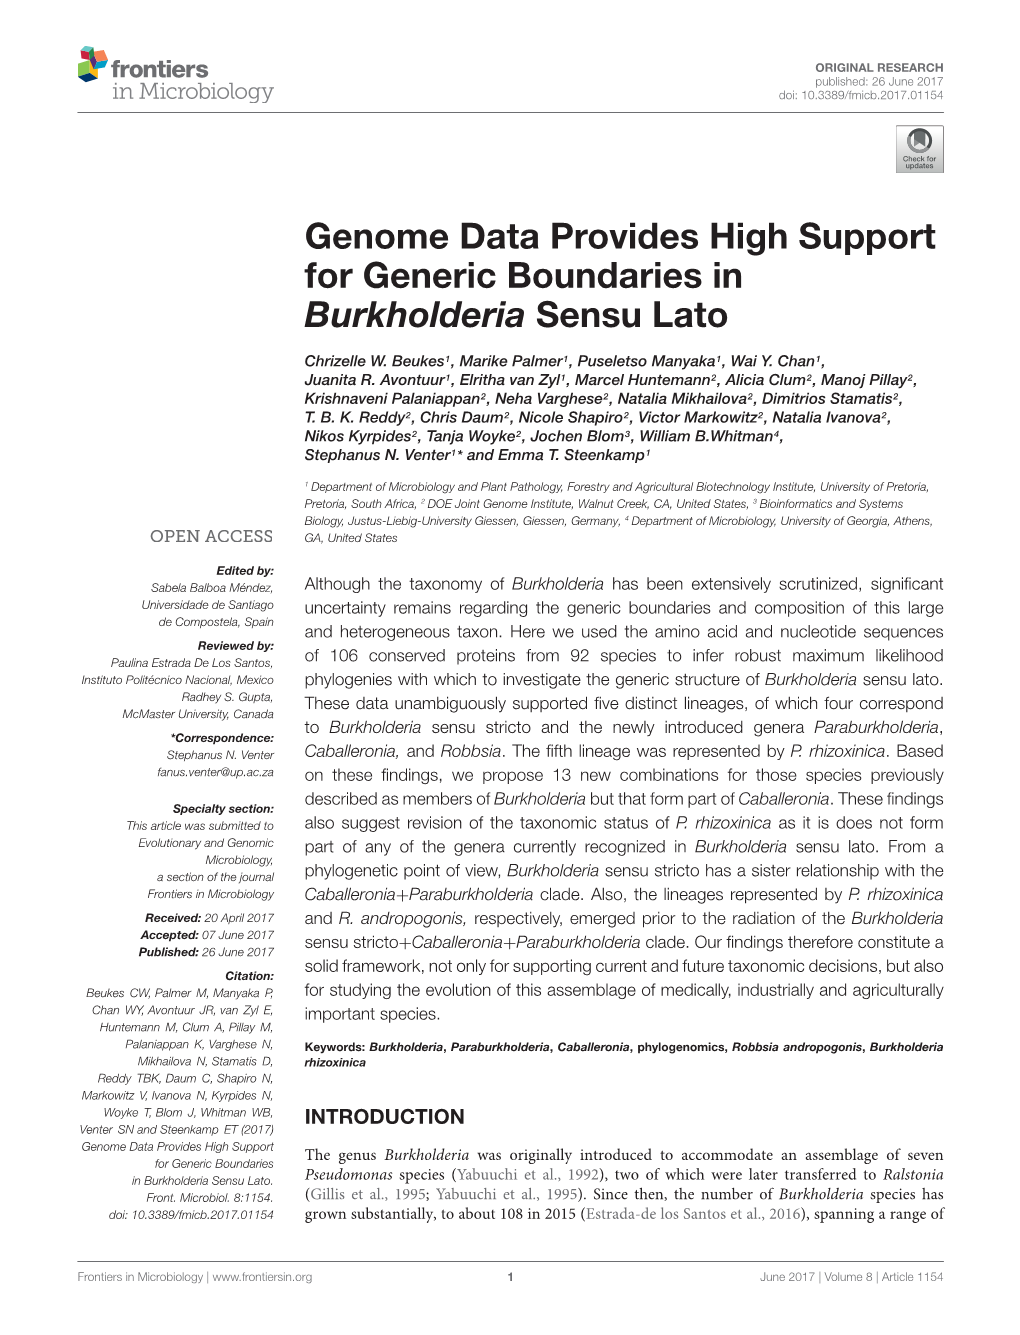 Genome Data Provides High Support for Generic Boundaries in Burkholderia Sensu Lato